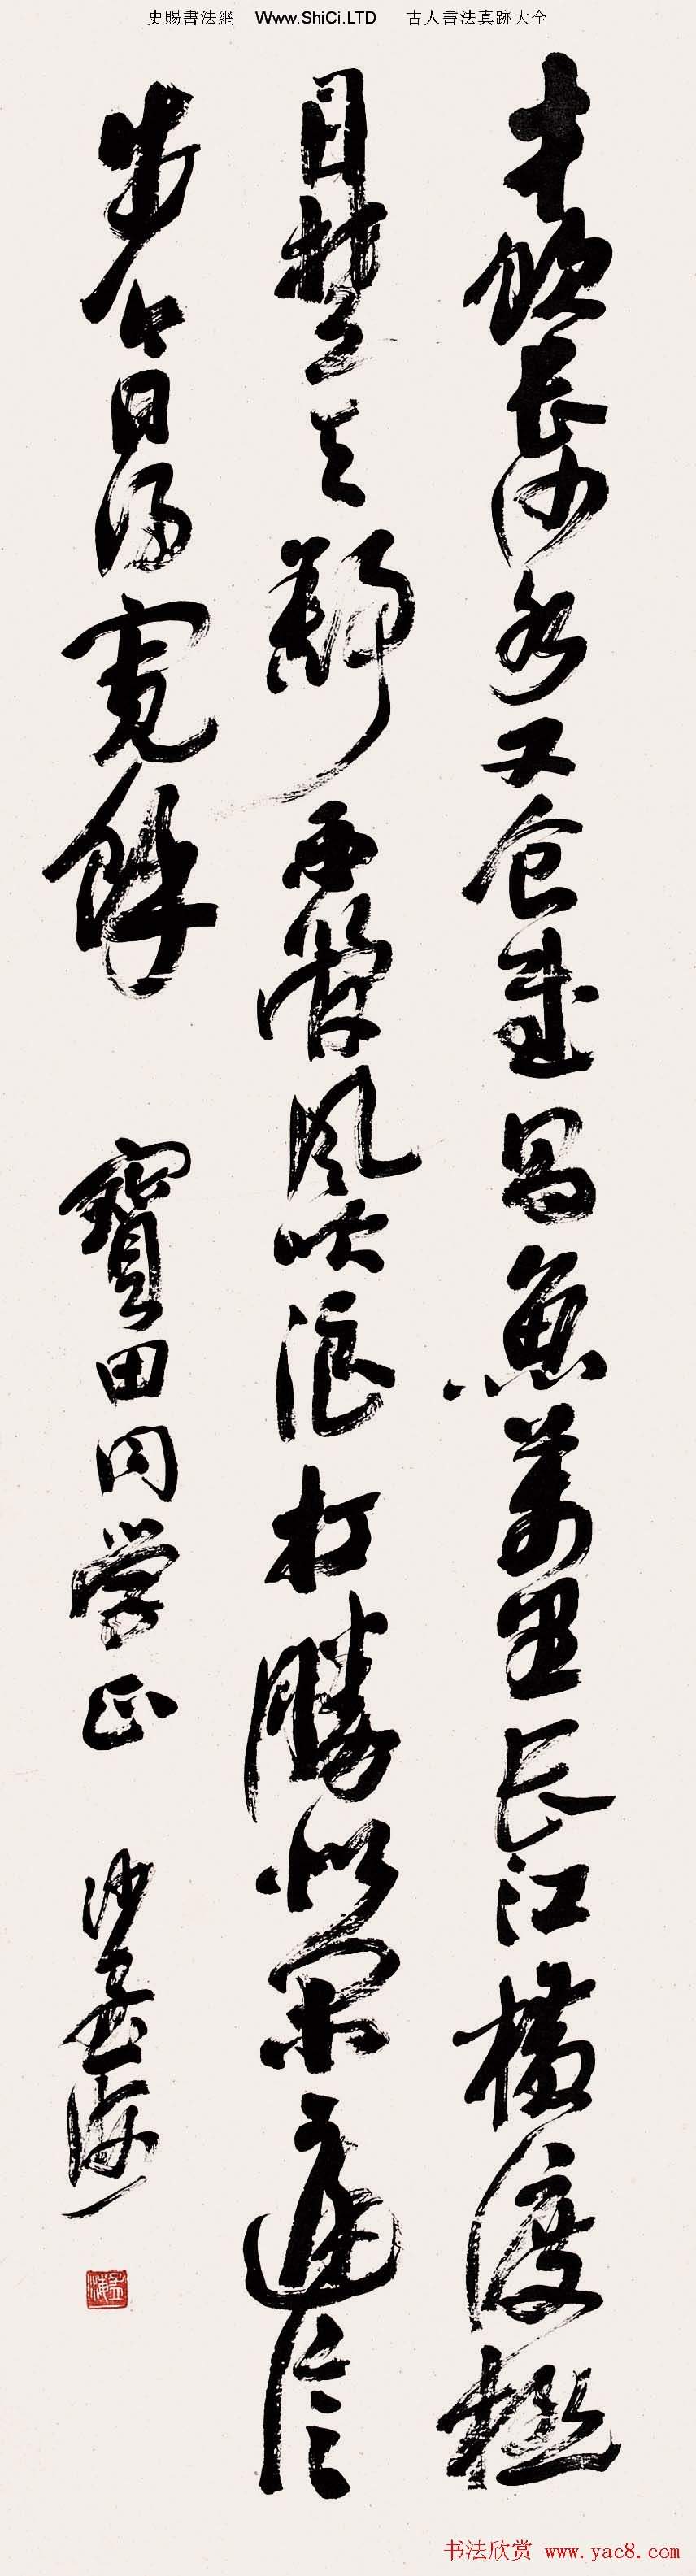 書壇泰斗沙孟海書法藝術展高清大圖（共44張圖片）